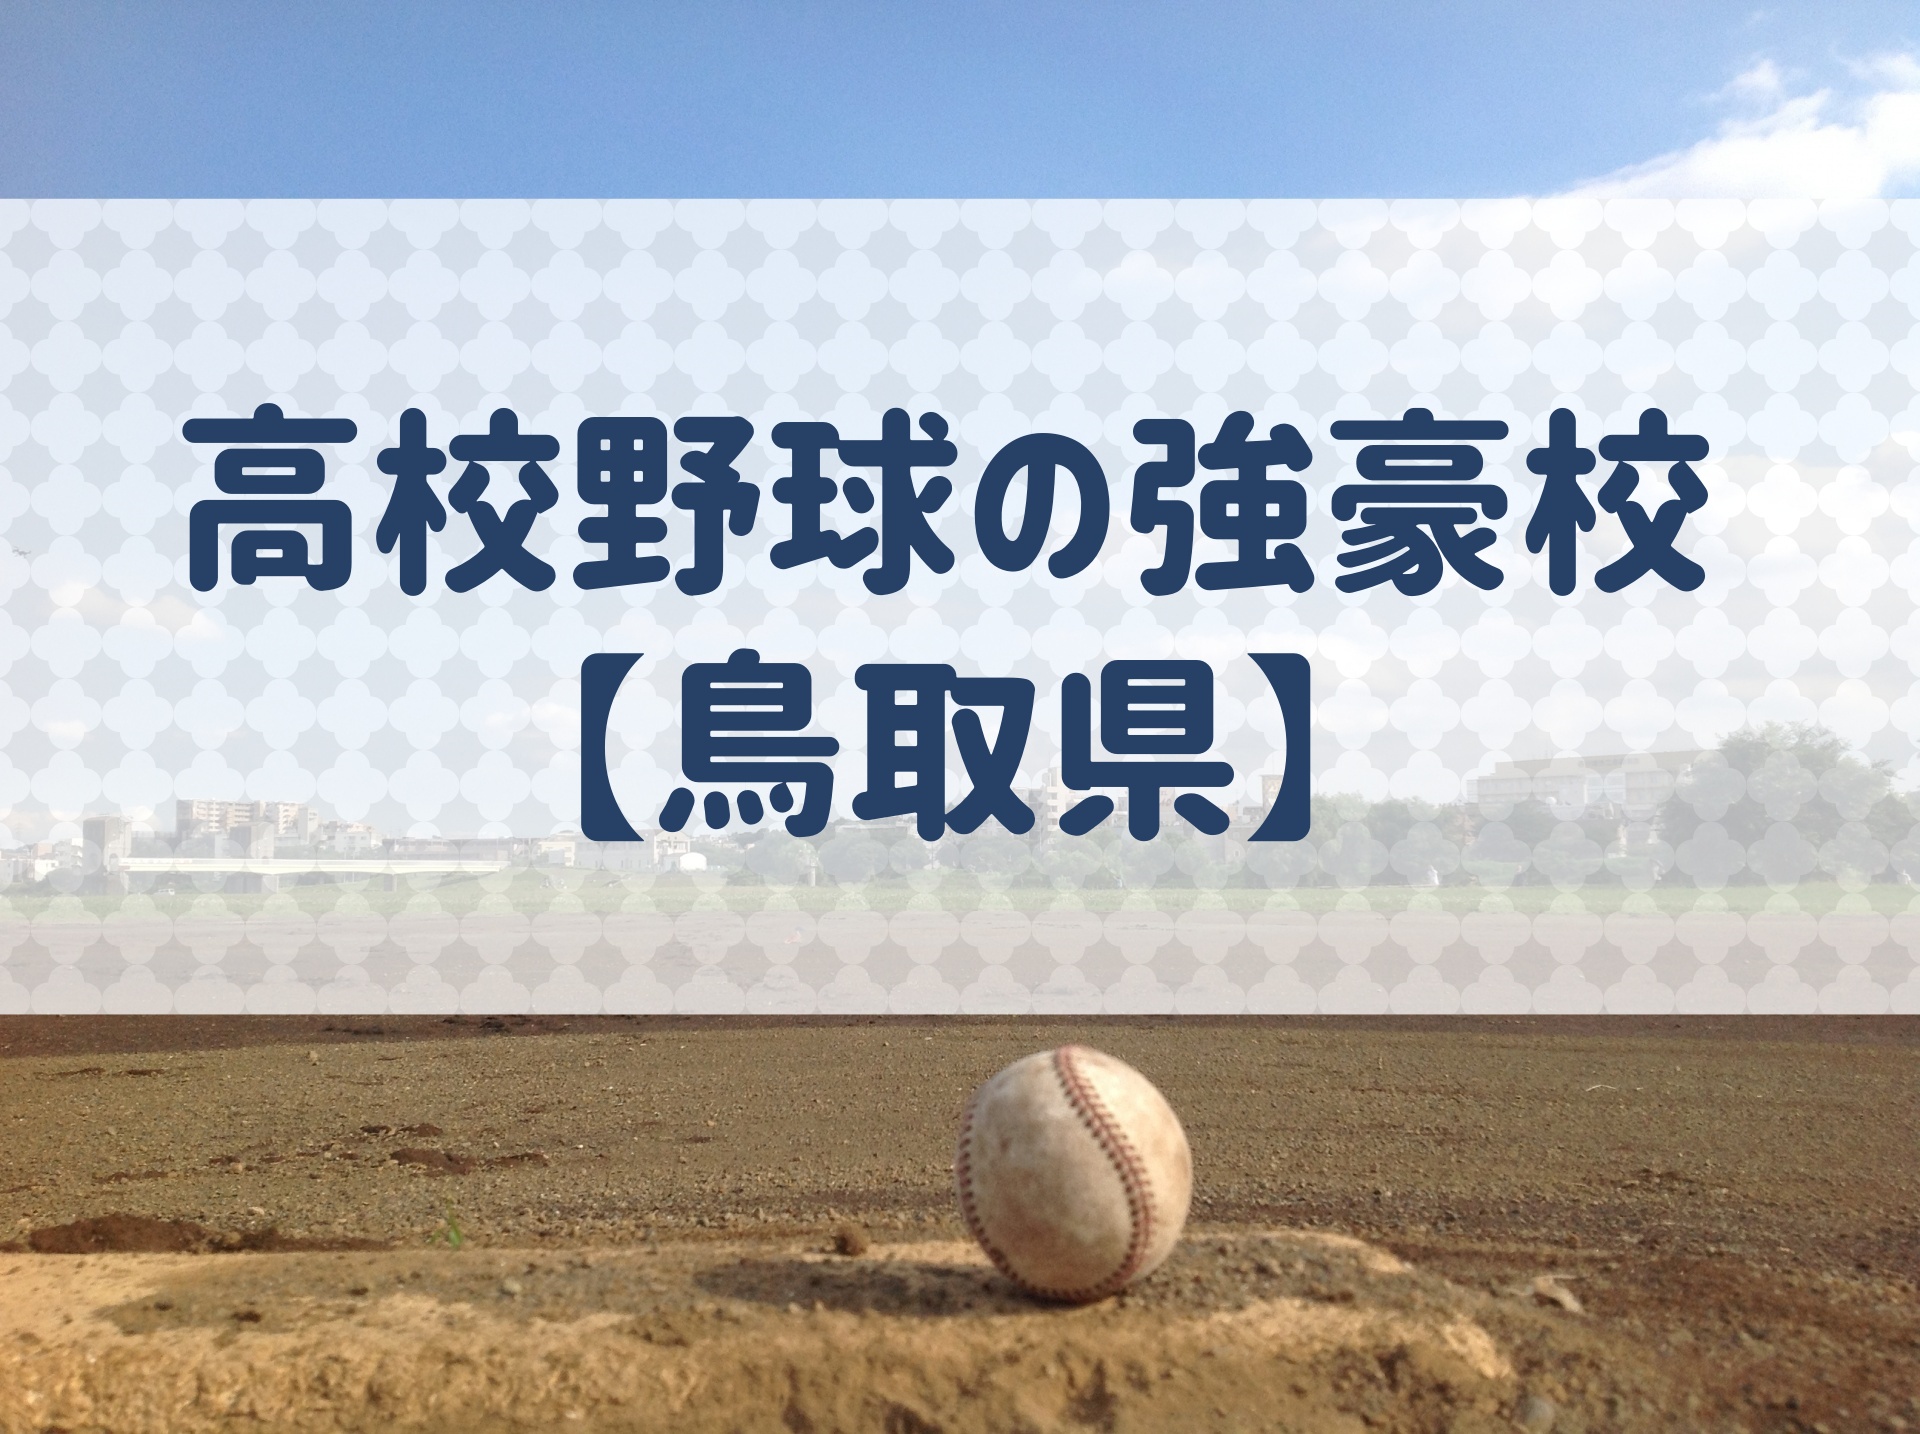 鳥取県 高校野球の強豪校 特徴と実績などを紹介 野球用語 Net